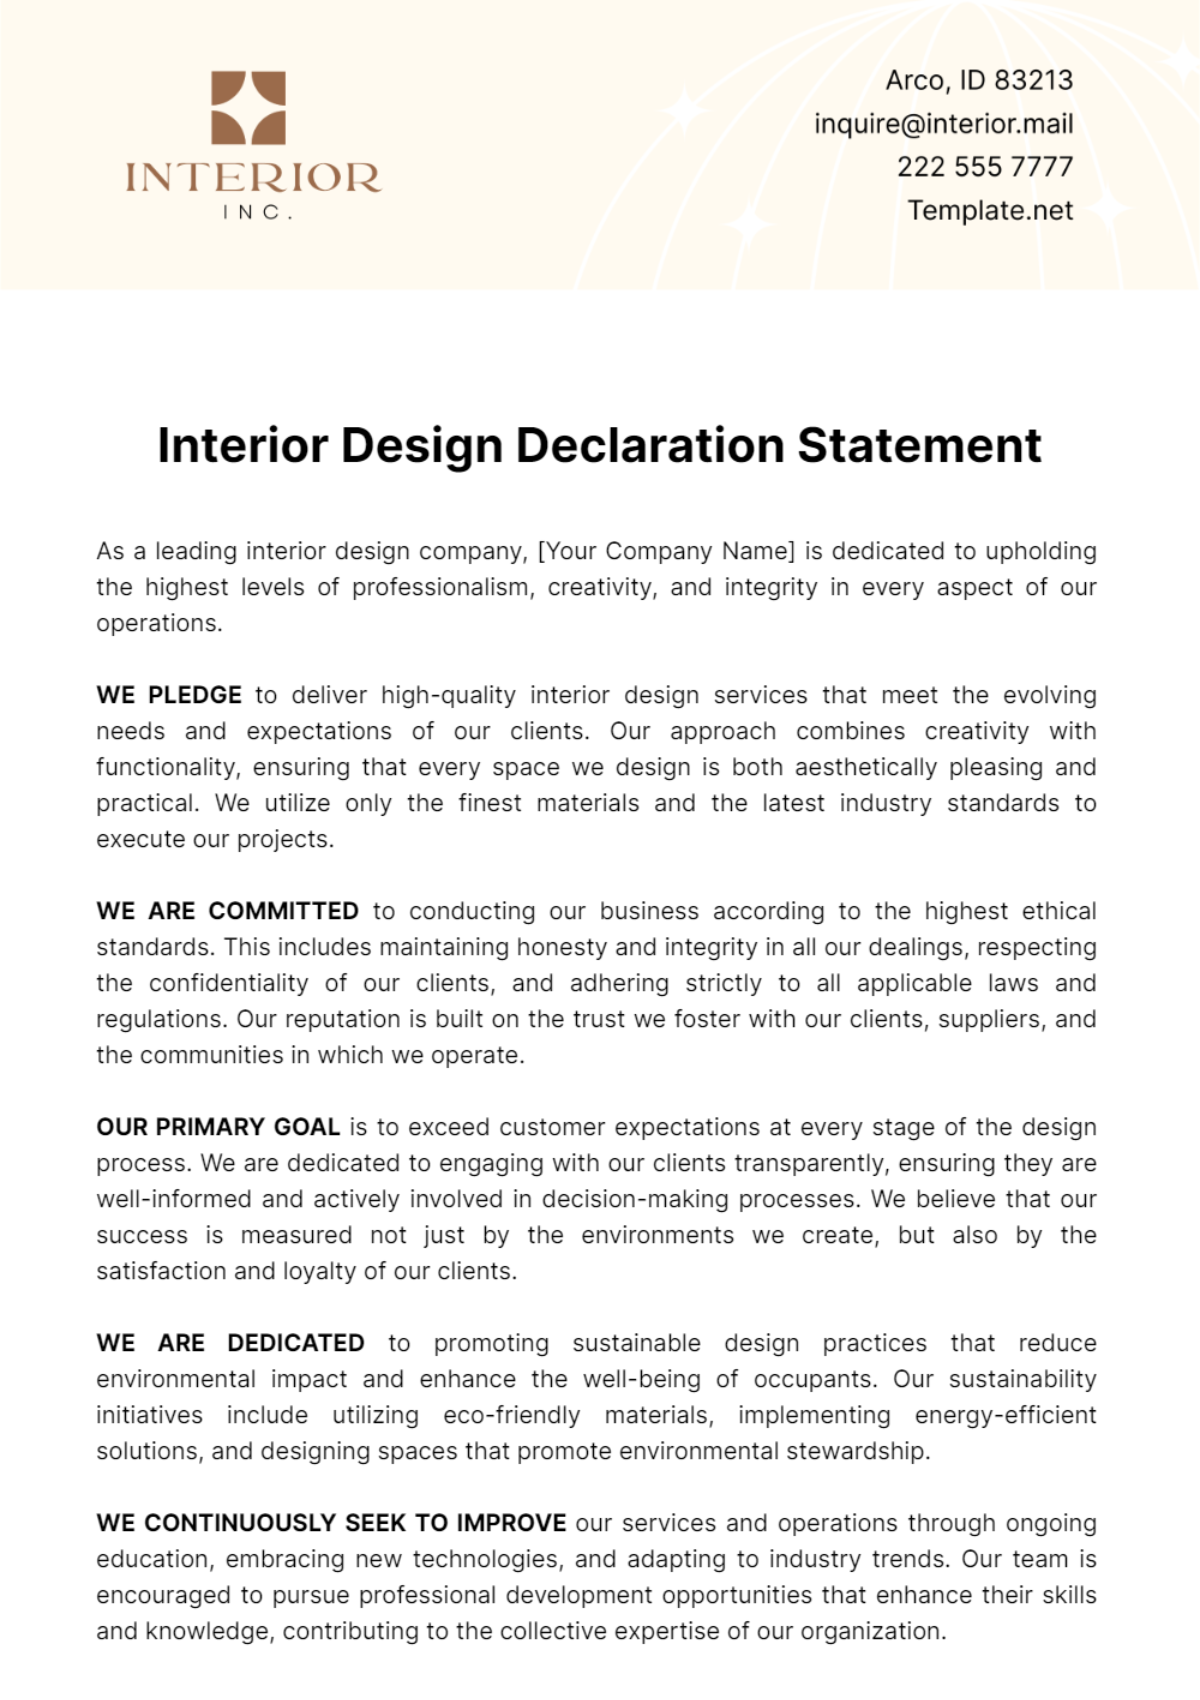 Free Interior Design Declaration Statement Template